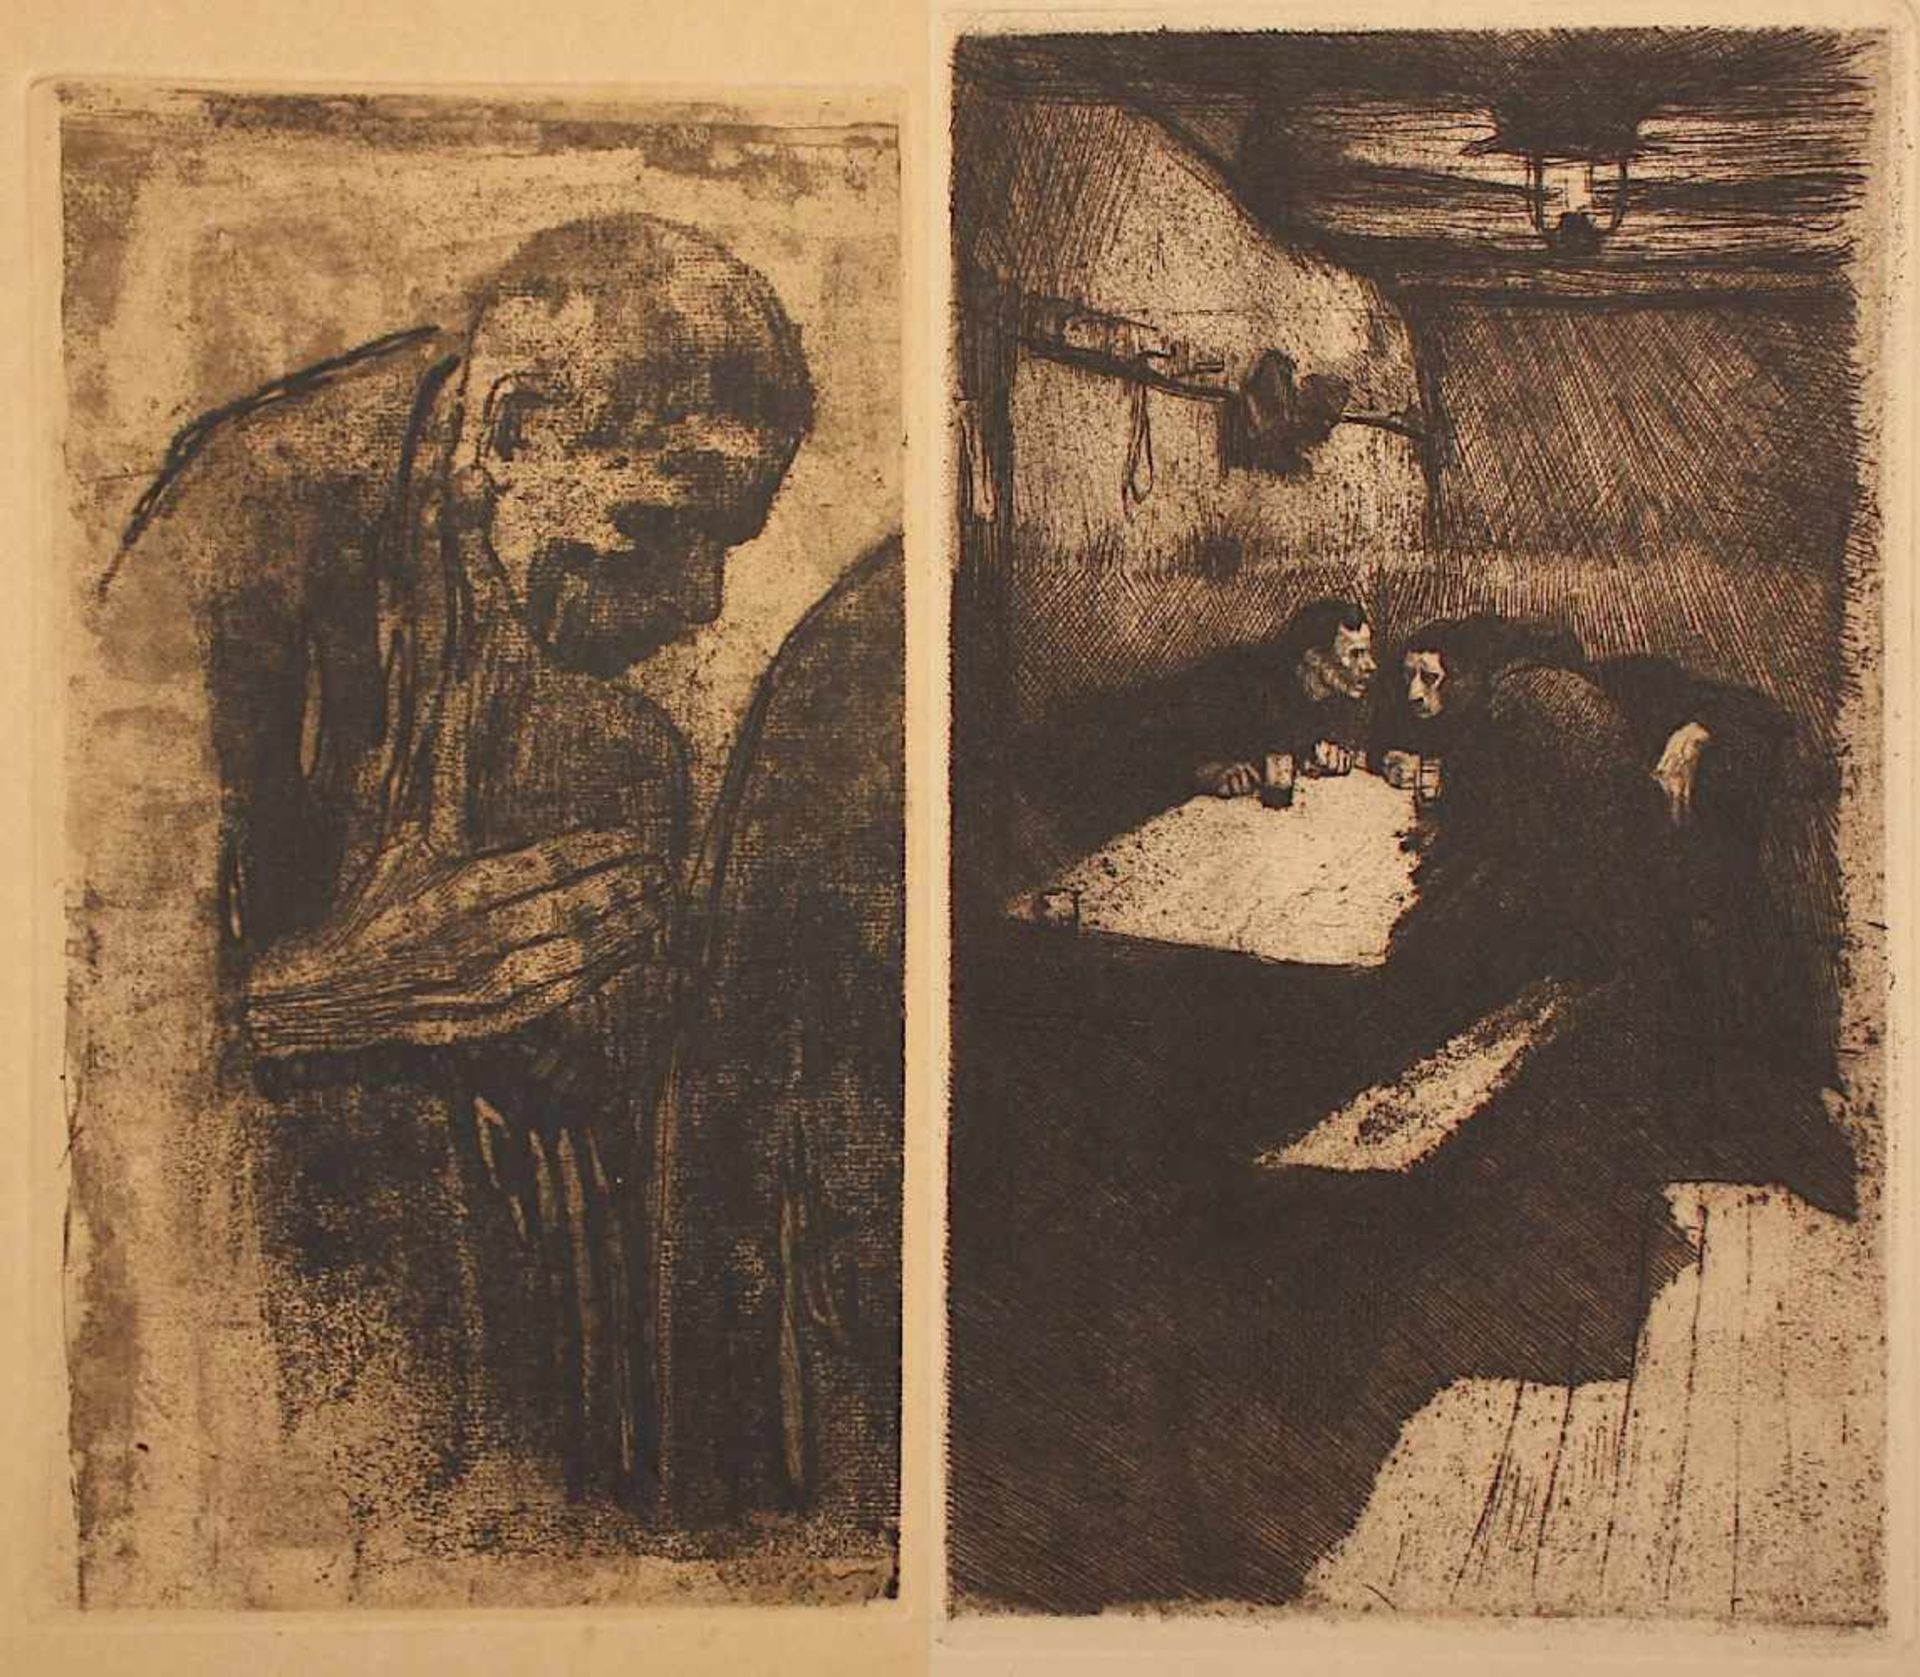 KOLLWITZ, Käthe, zwei Radierungen, "Beratung", aus Ein Weberaufstand/1893, "Der Trauernder", 1919,